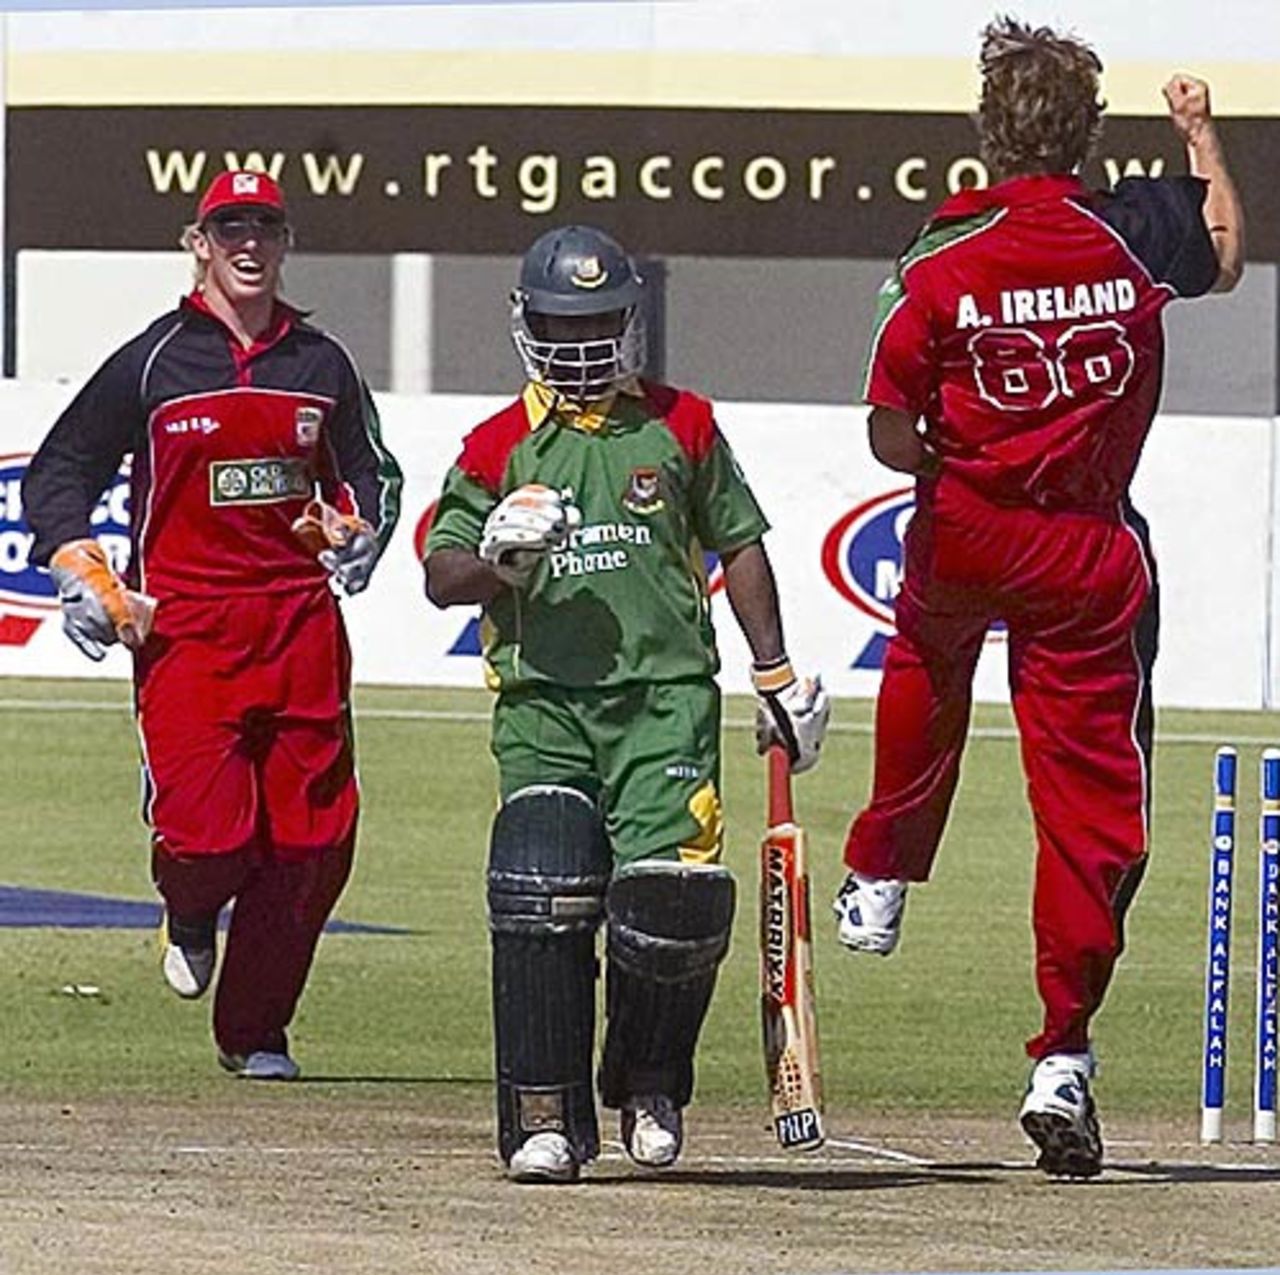 Anthony Ireland celebrates Aftab Ahmed's wicket, Zimbabwe v Bangladesh, 3rd ODI, Harare, August 2, 2006